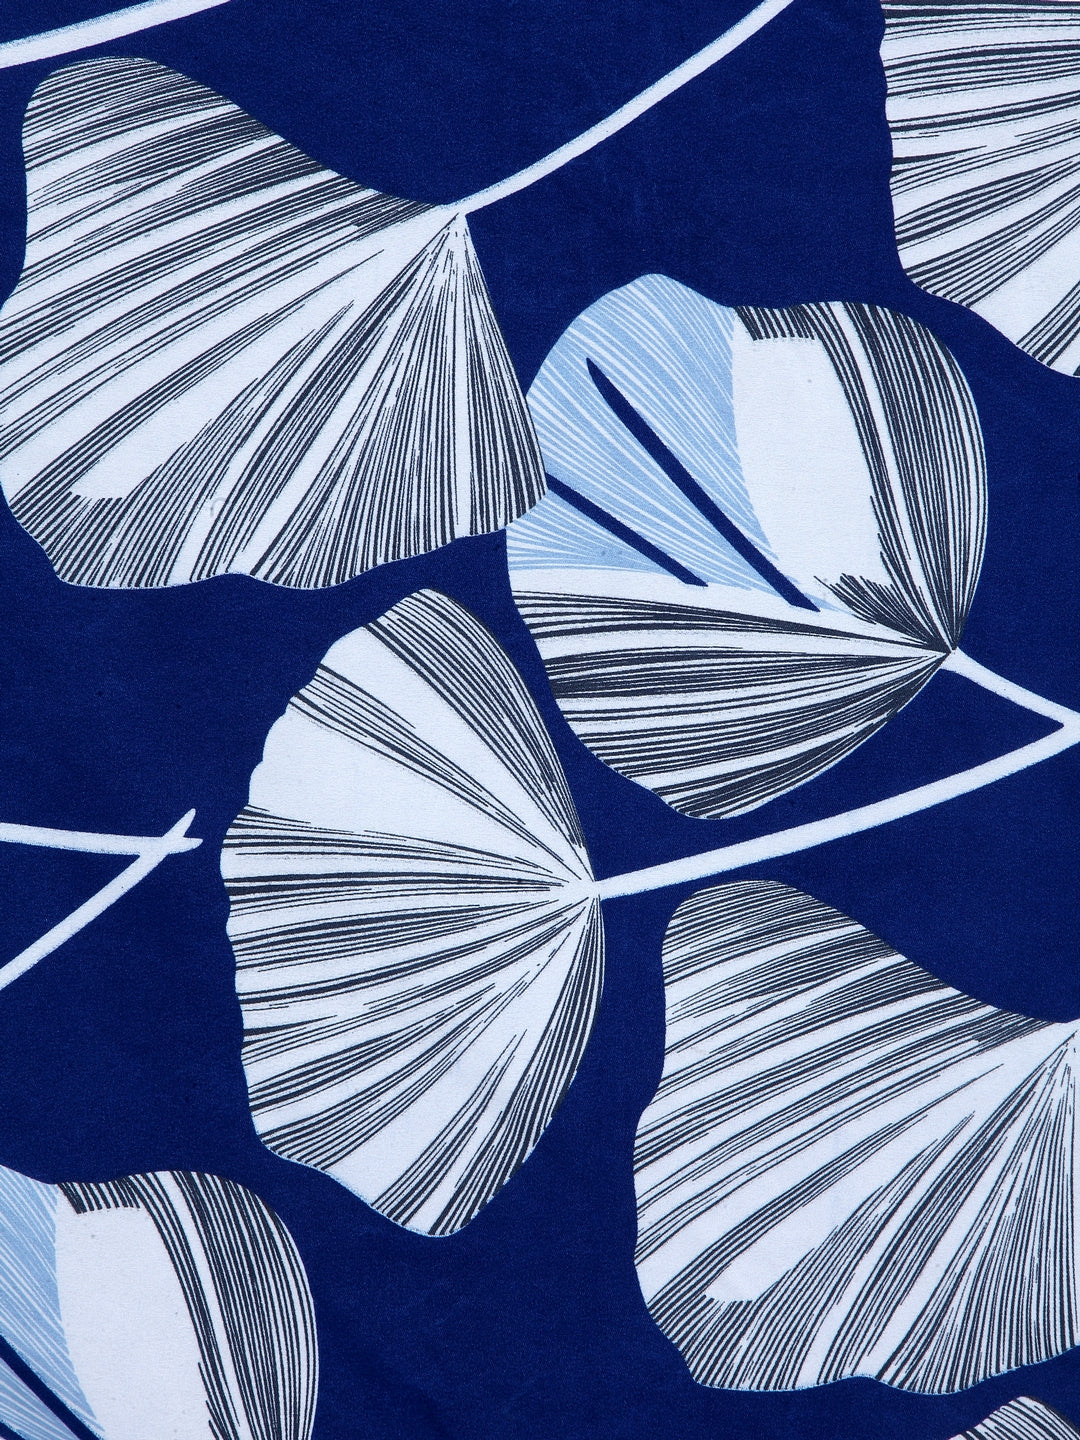 Arrabi Blue Floral TC Cotton Blend Double Size Bedsheet with 2 Pillow Covers (250 X 220 Cm)